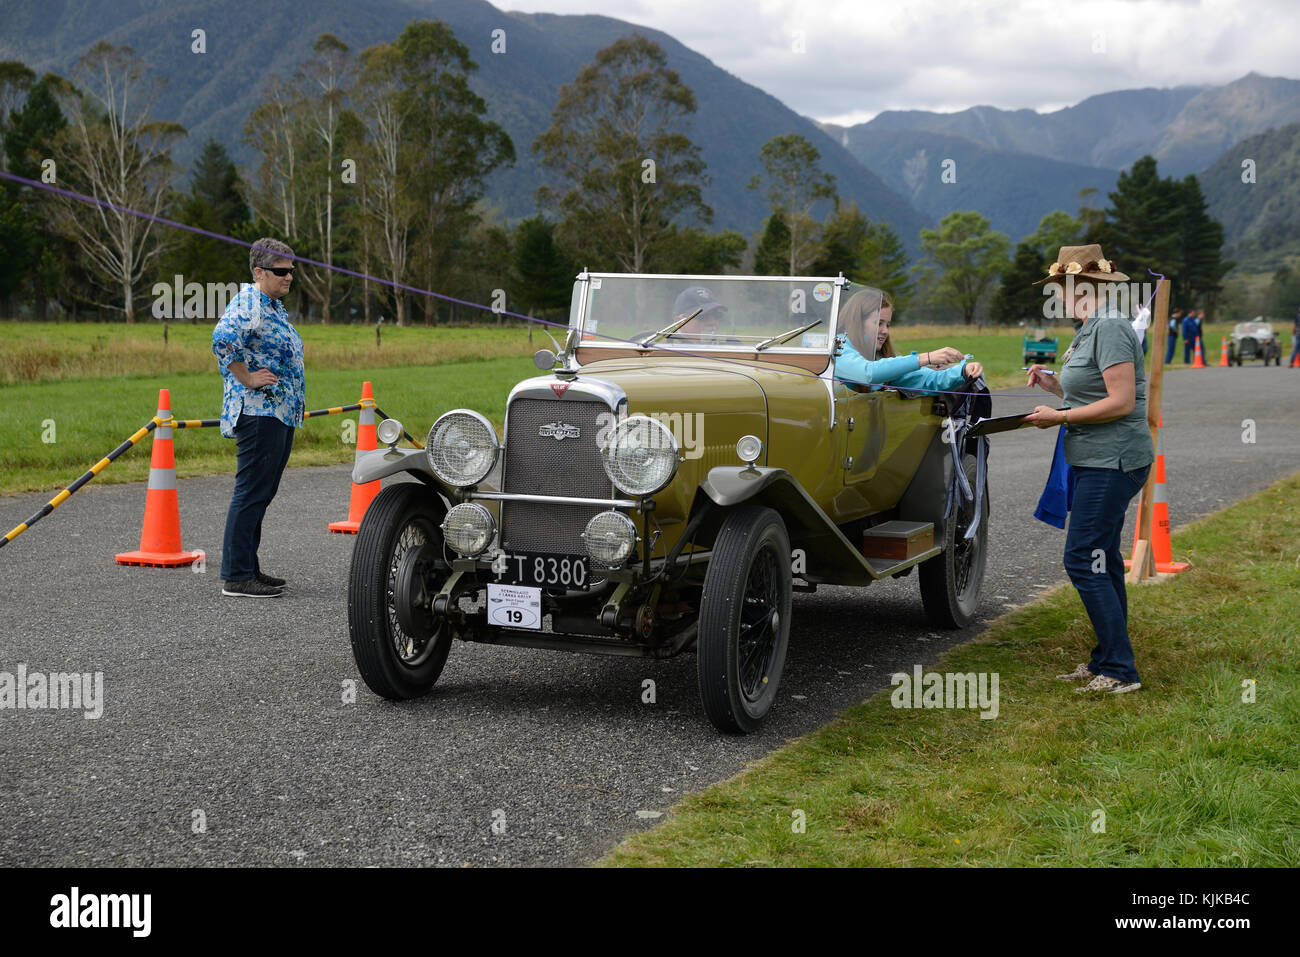 HAUPIRI, Nouvelle-Zélande, le 18 mars 2017 : les candidats dans un rallye de voitures anciennes traîner dans un temps de lavage de la concurrence. Le véhicule est une 1930 Alvis Silver S Banque D'Images